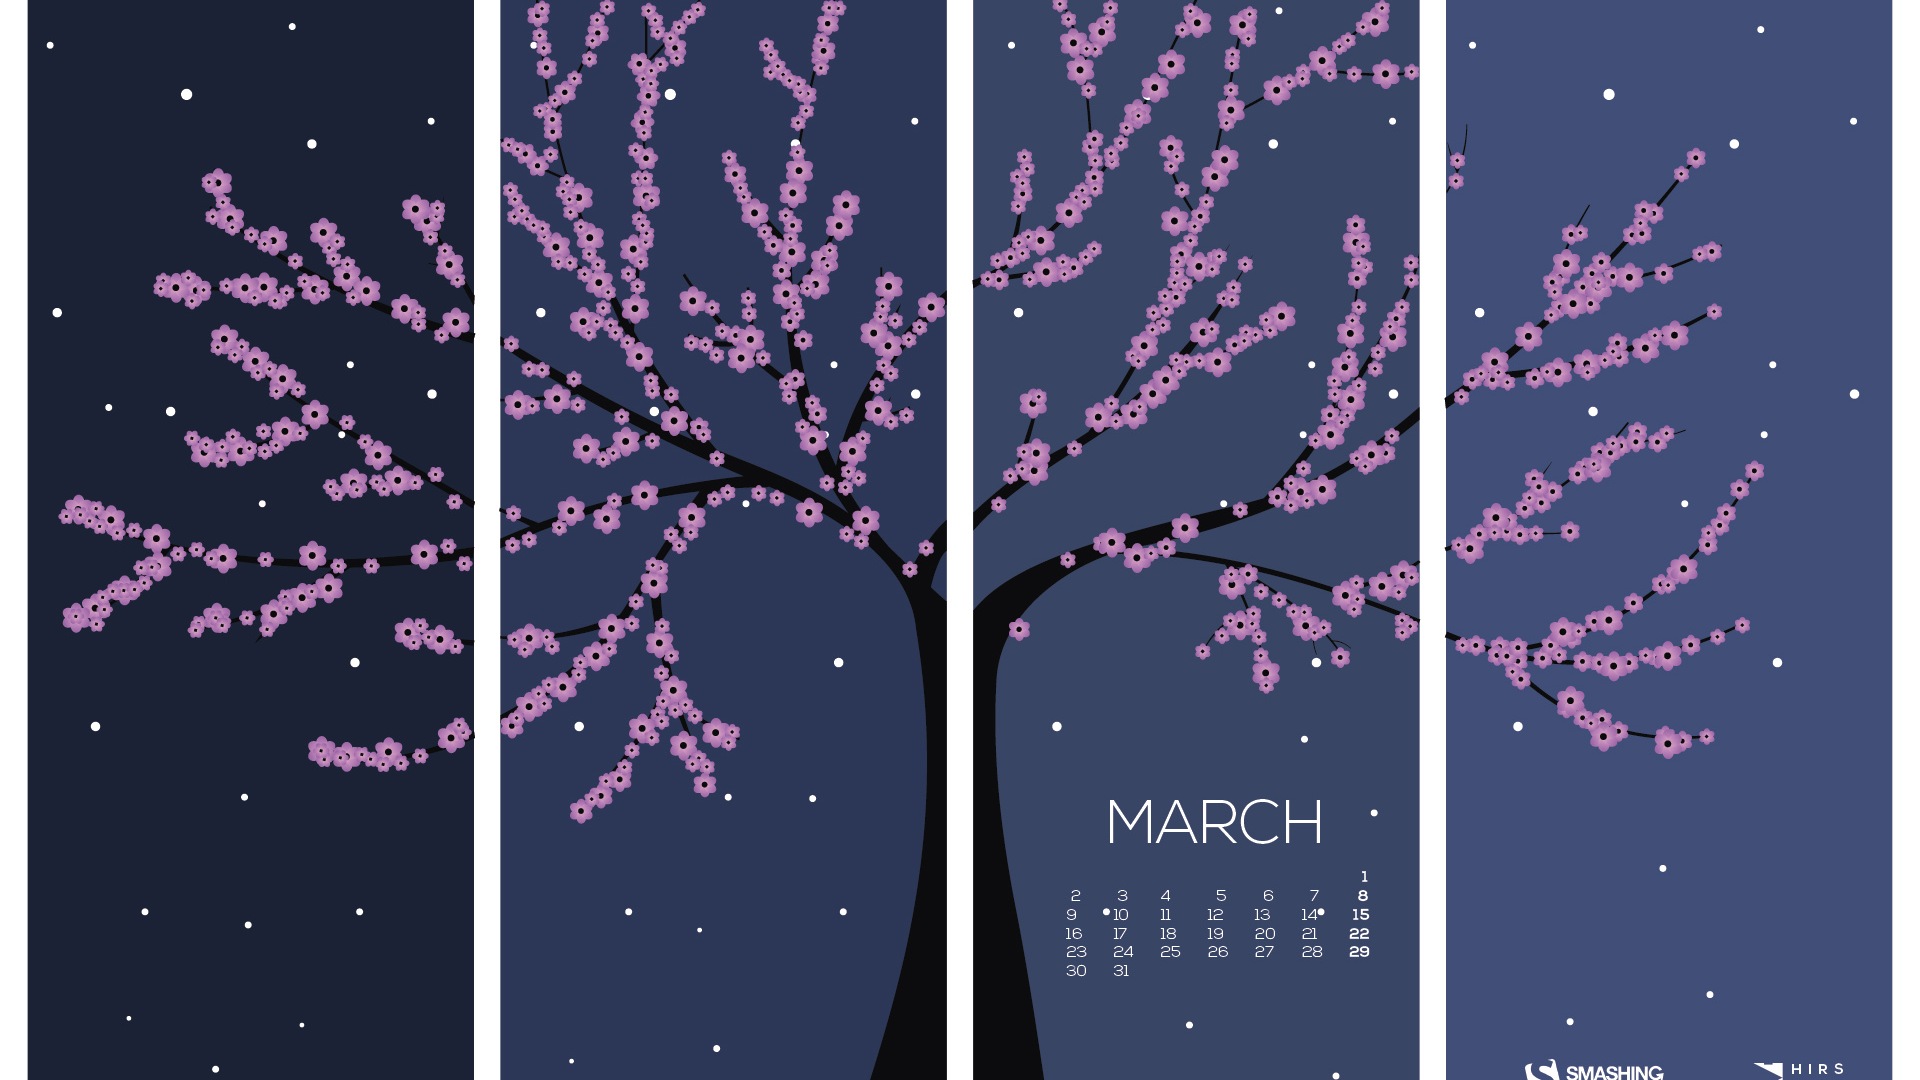 March 2015 Calendar wallpaper (2) #15 - 1920x1080